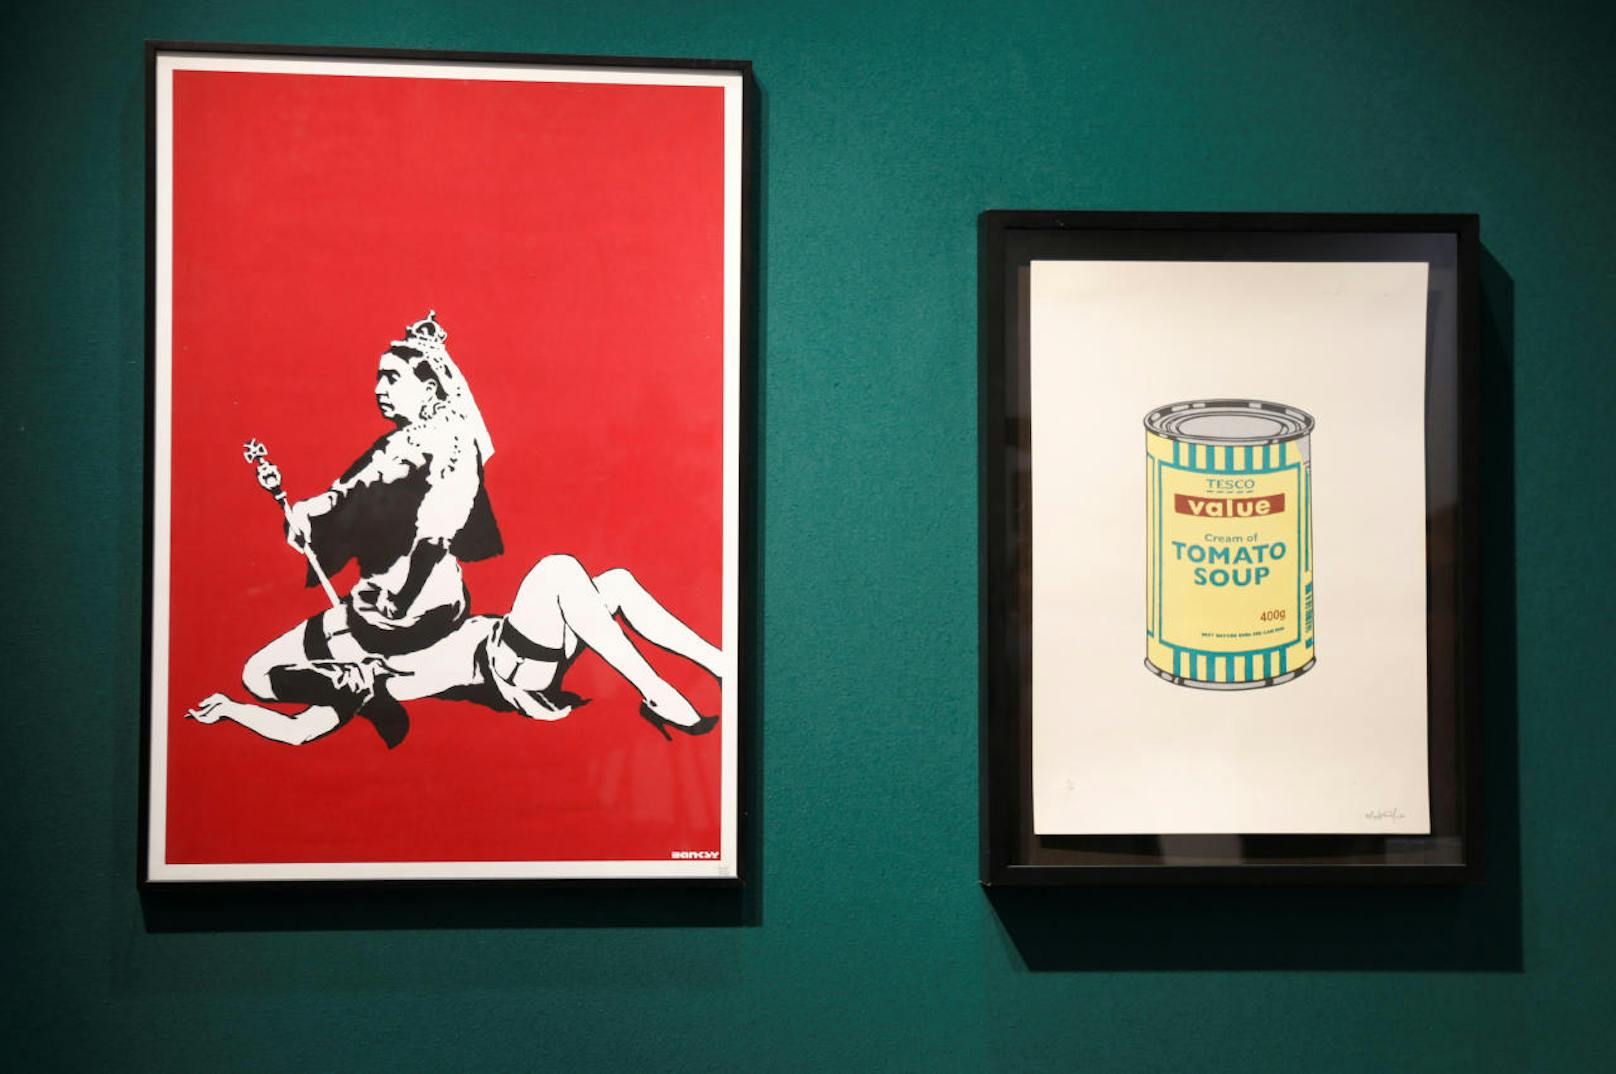 Die Preise von Banksy-Bildern klettern ständig im Preis. Gleichzeitig ist seine Identität noch immer nicht bekannt. Im Bild: "Queen Vic" (2004) und "Soup Can (Yellow/Emerald/Brown)" (2005) von Banksy